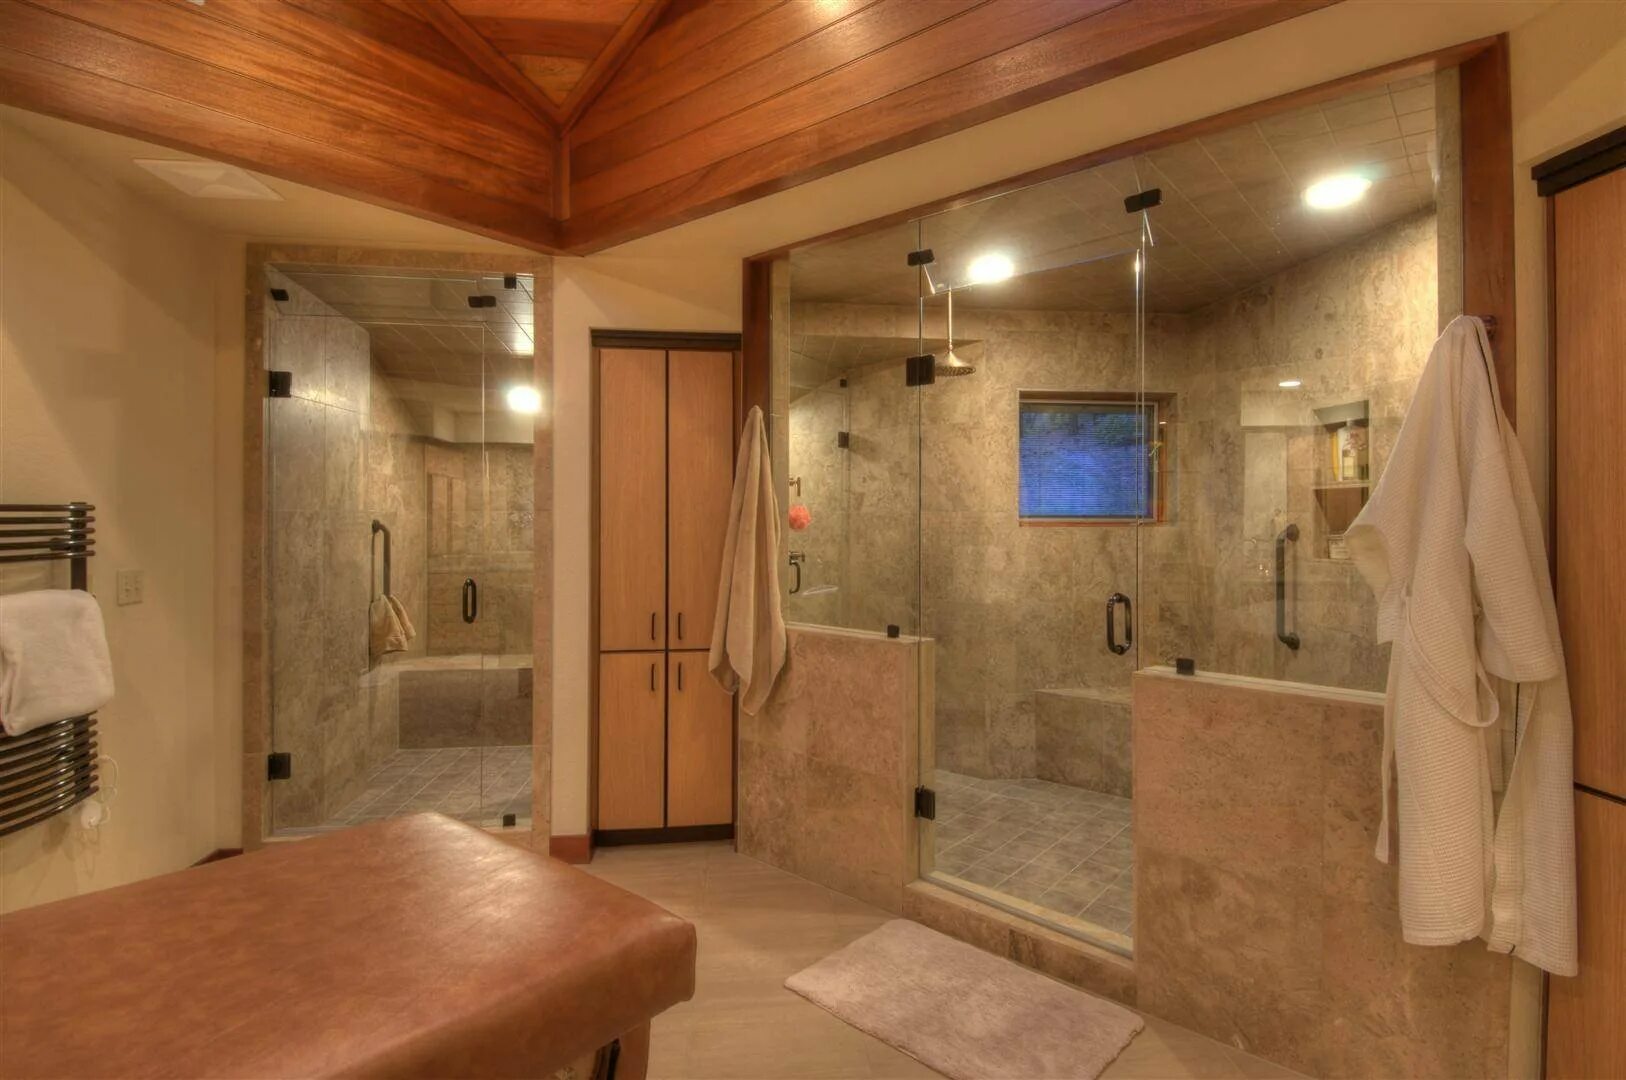 Ванная комната с сауной. Ванная комната с сауной и душем. Душевая комната с сауной. Видео баня душевая